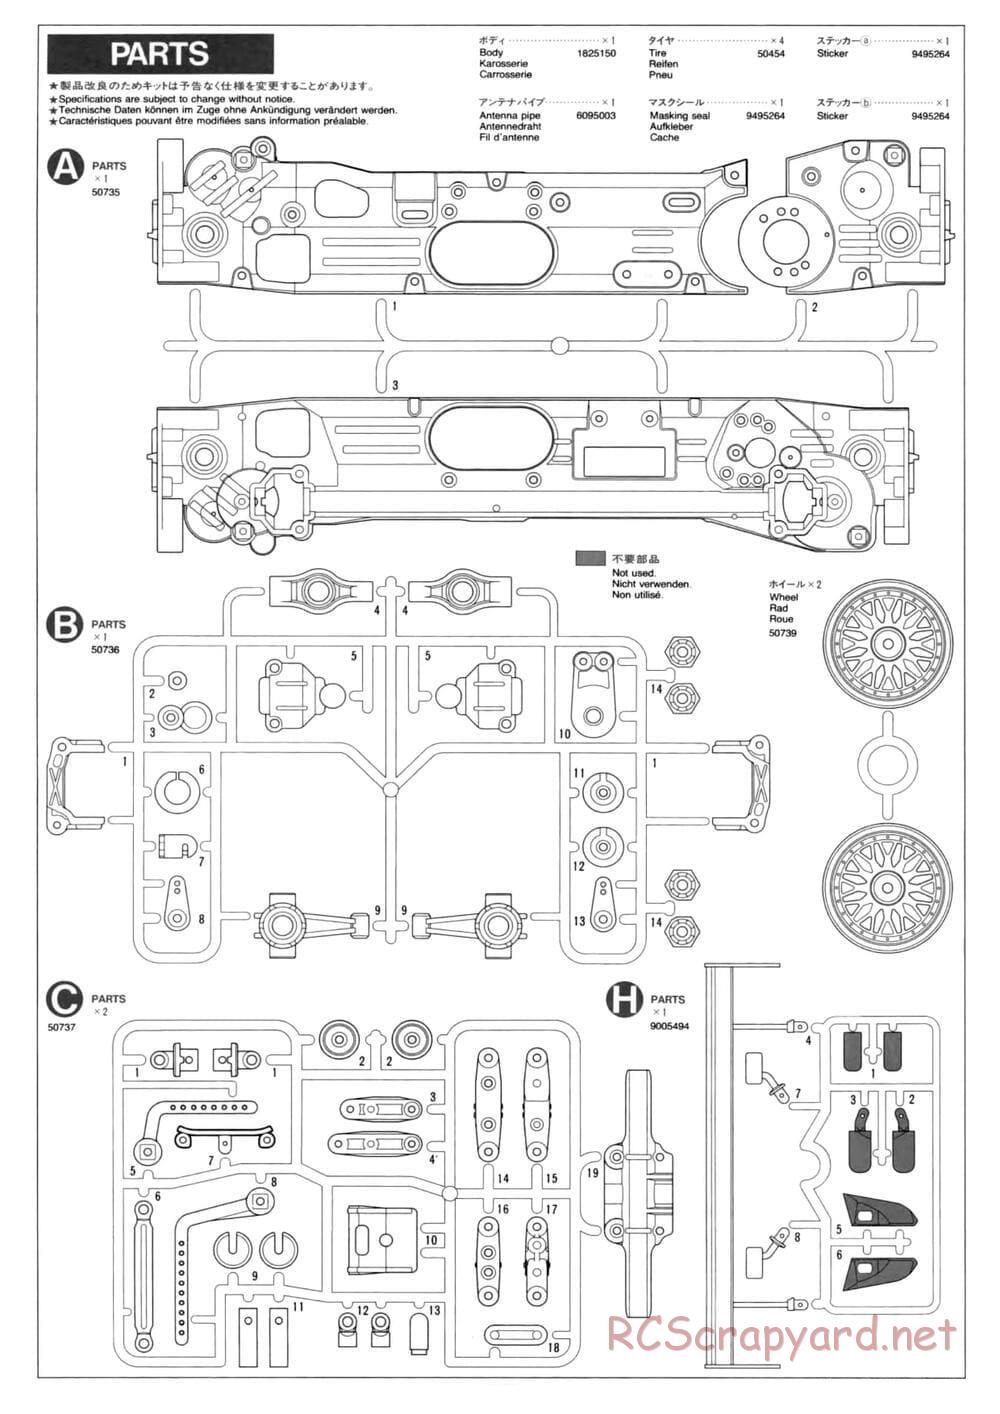 Tamiya - TL-01 Chassis - Manual - Page 17